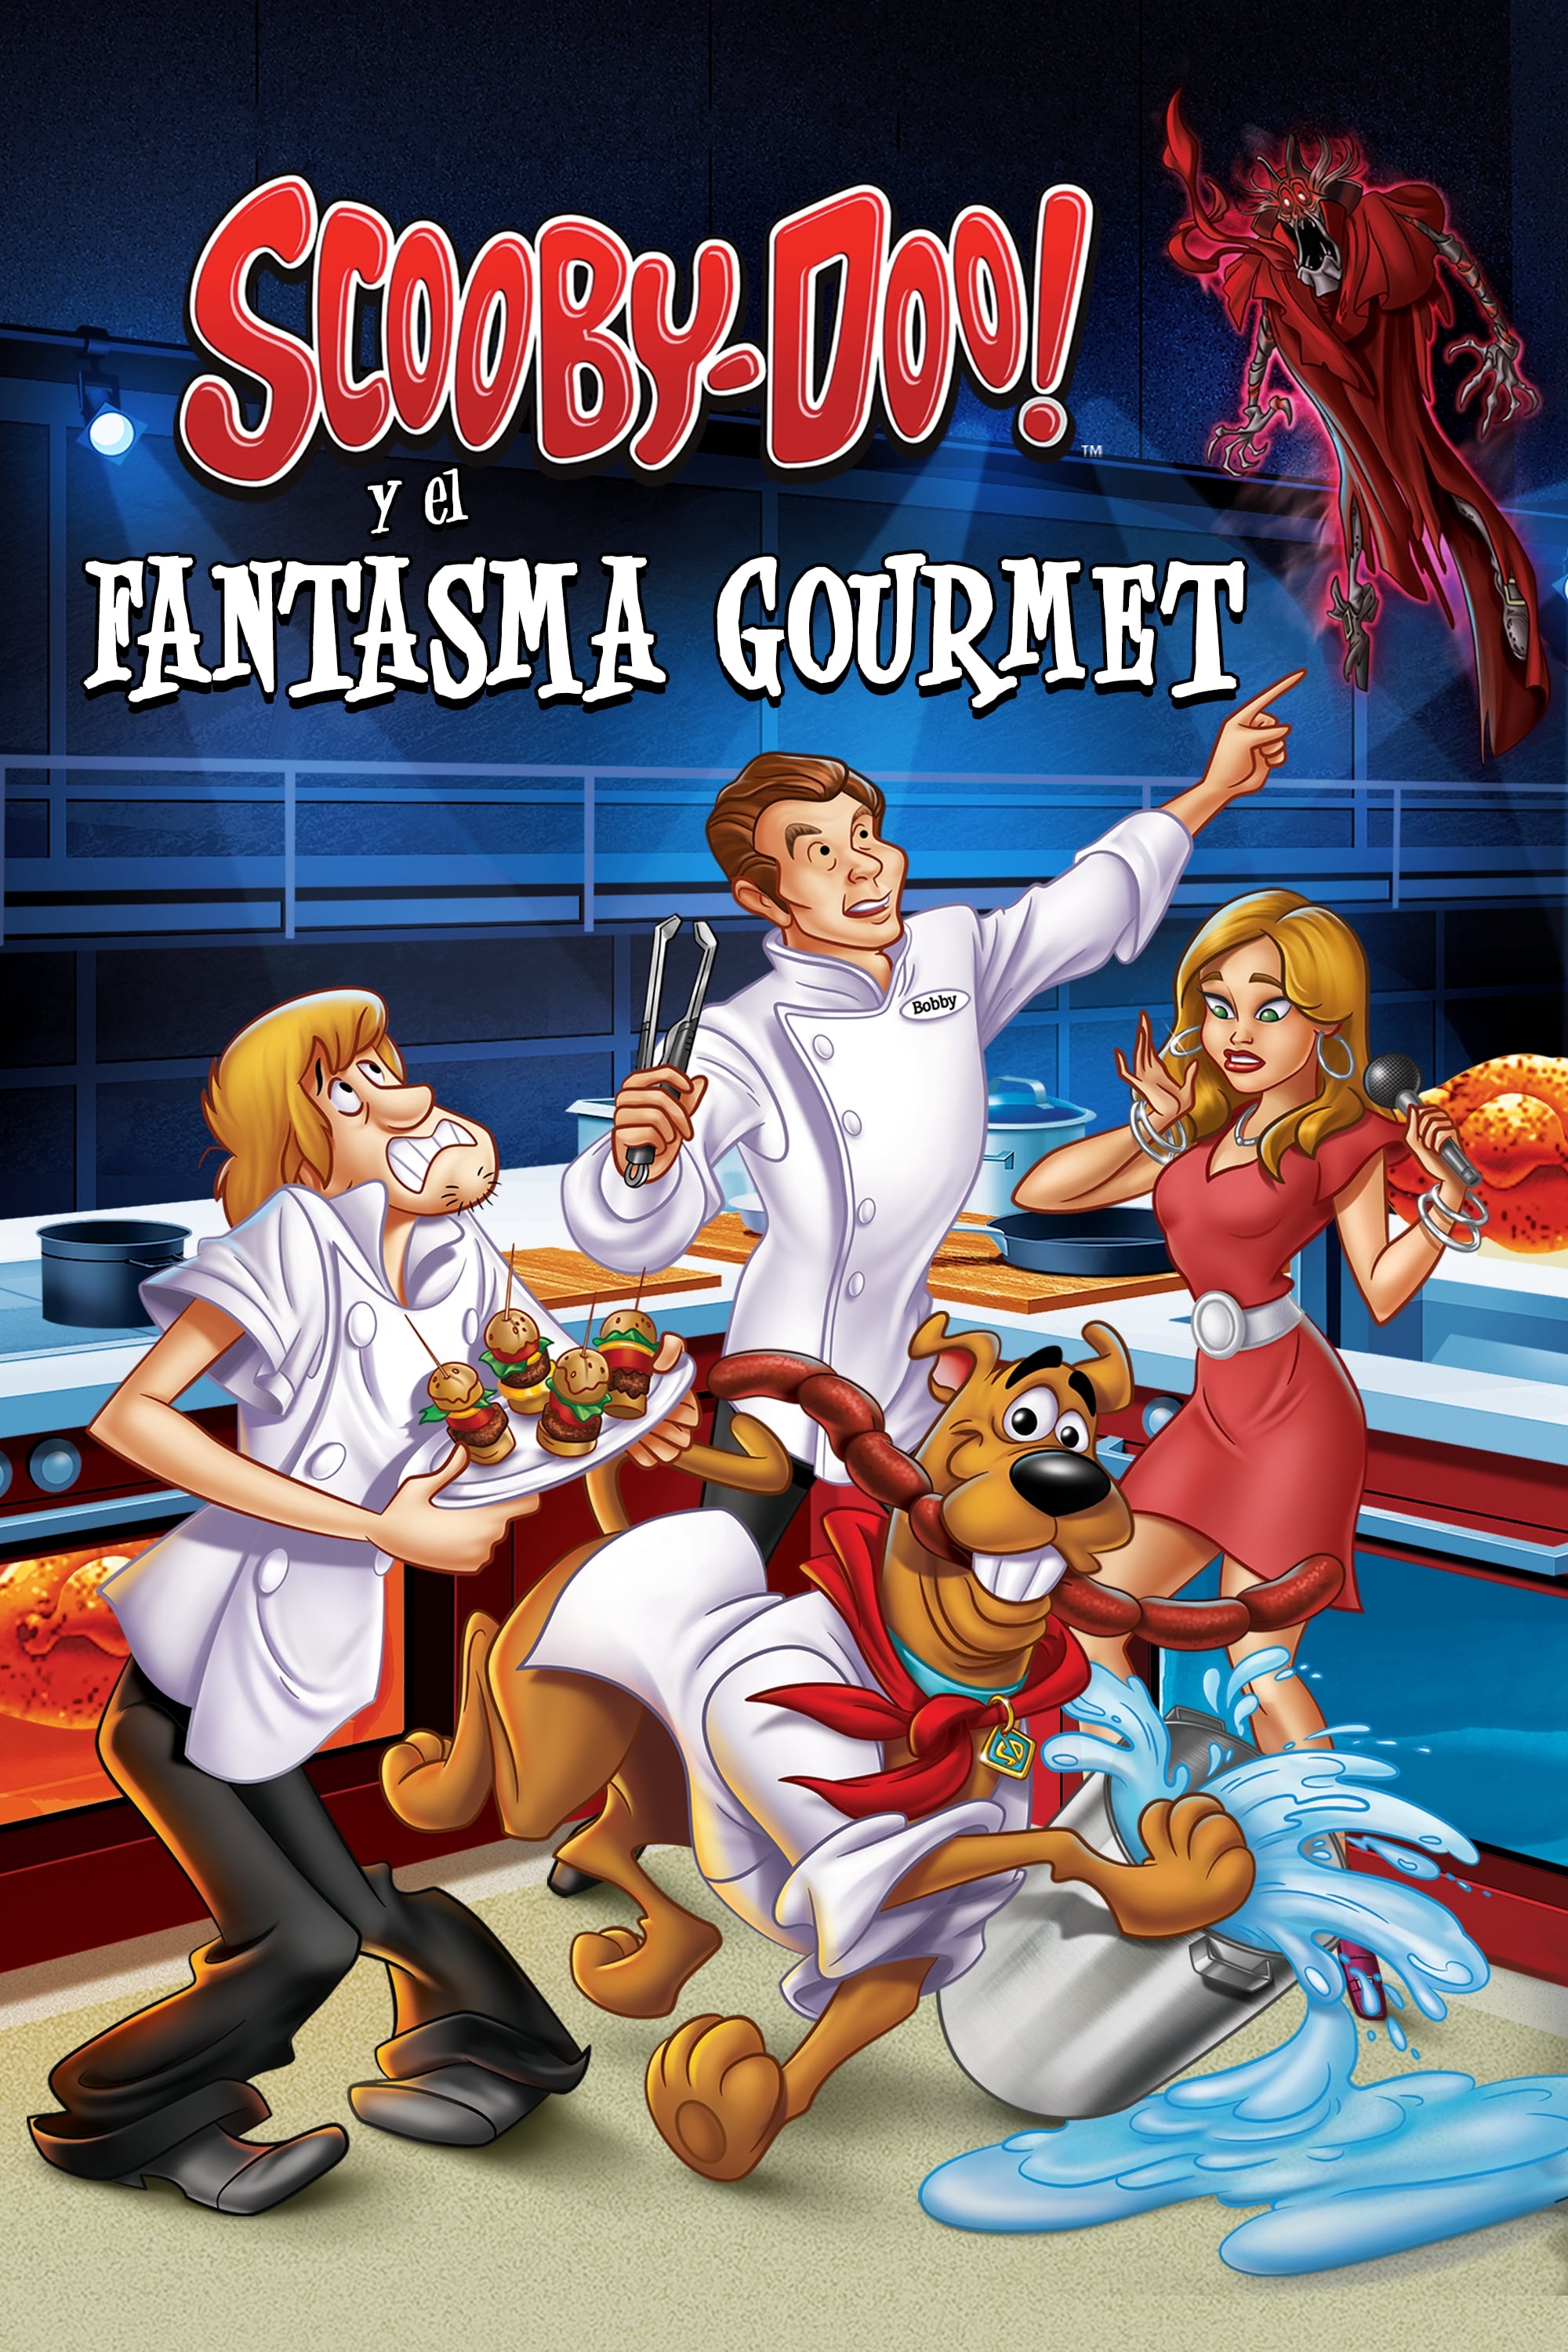 Scooby Doo Y El Fantasma Gourmet